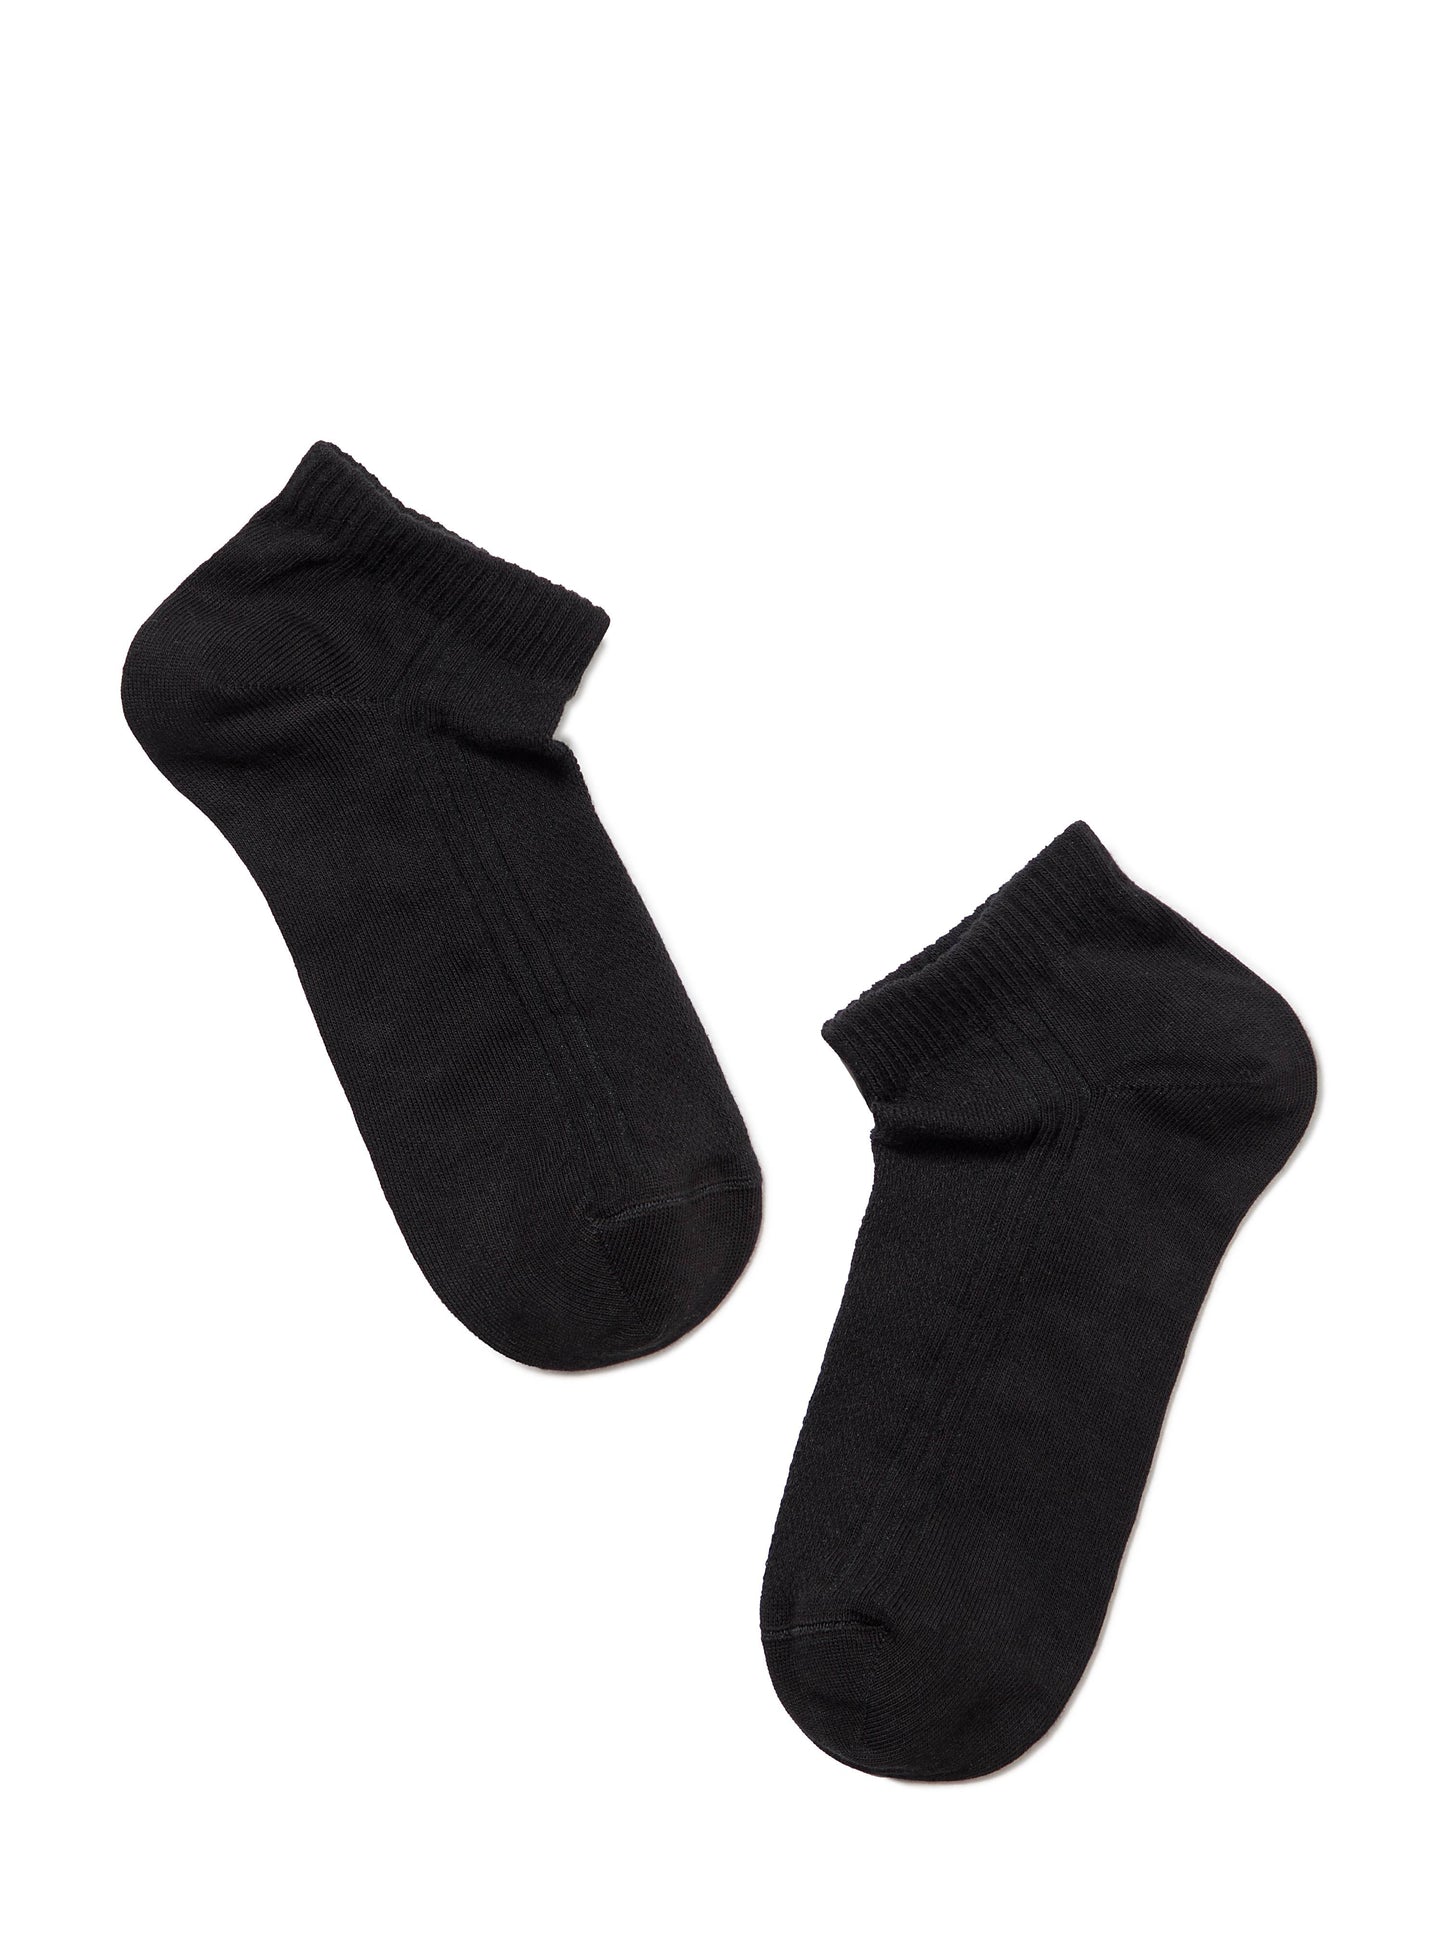 Sneaker Socken dünn und atmungsaktiv für Damen in weiß und schwarz - Luzy